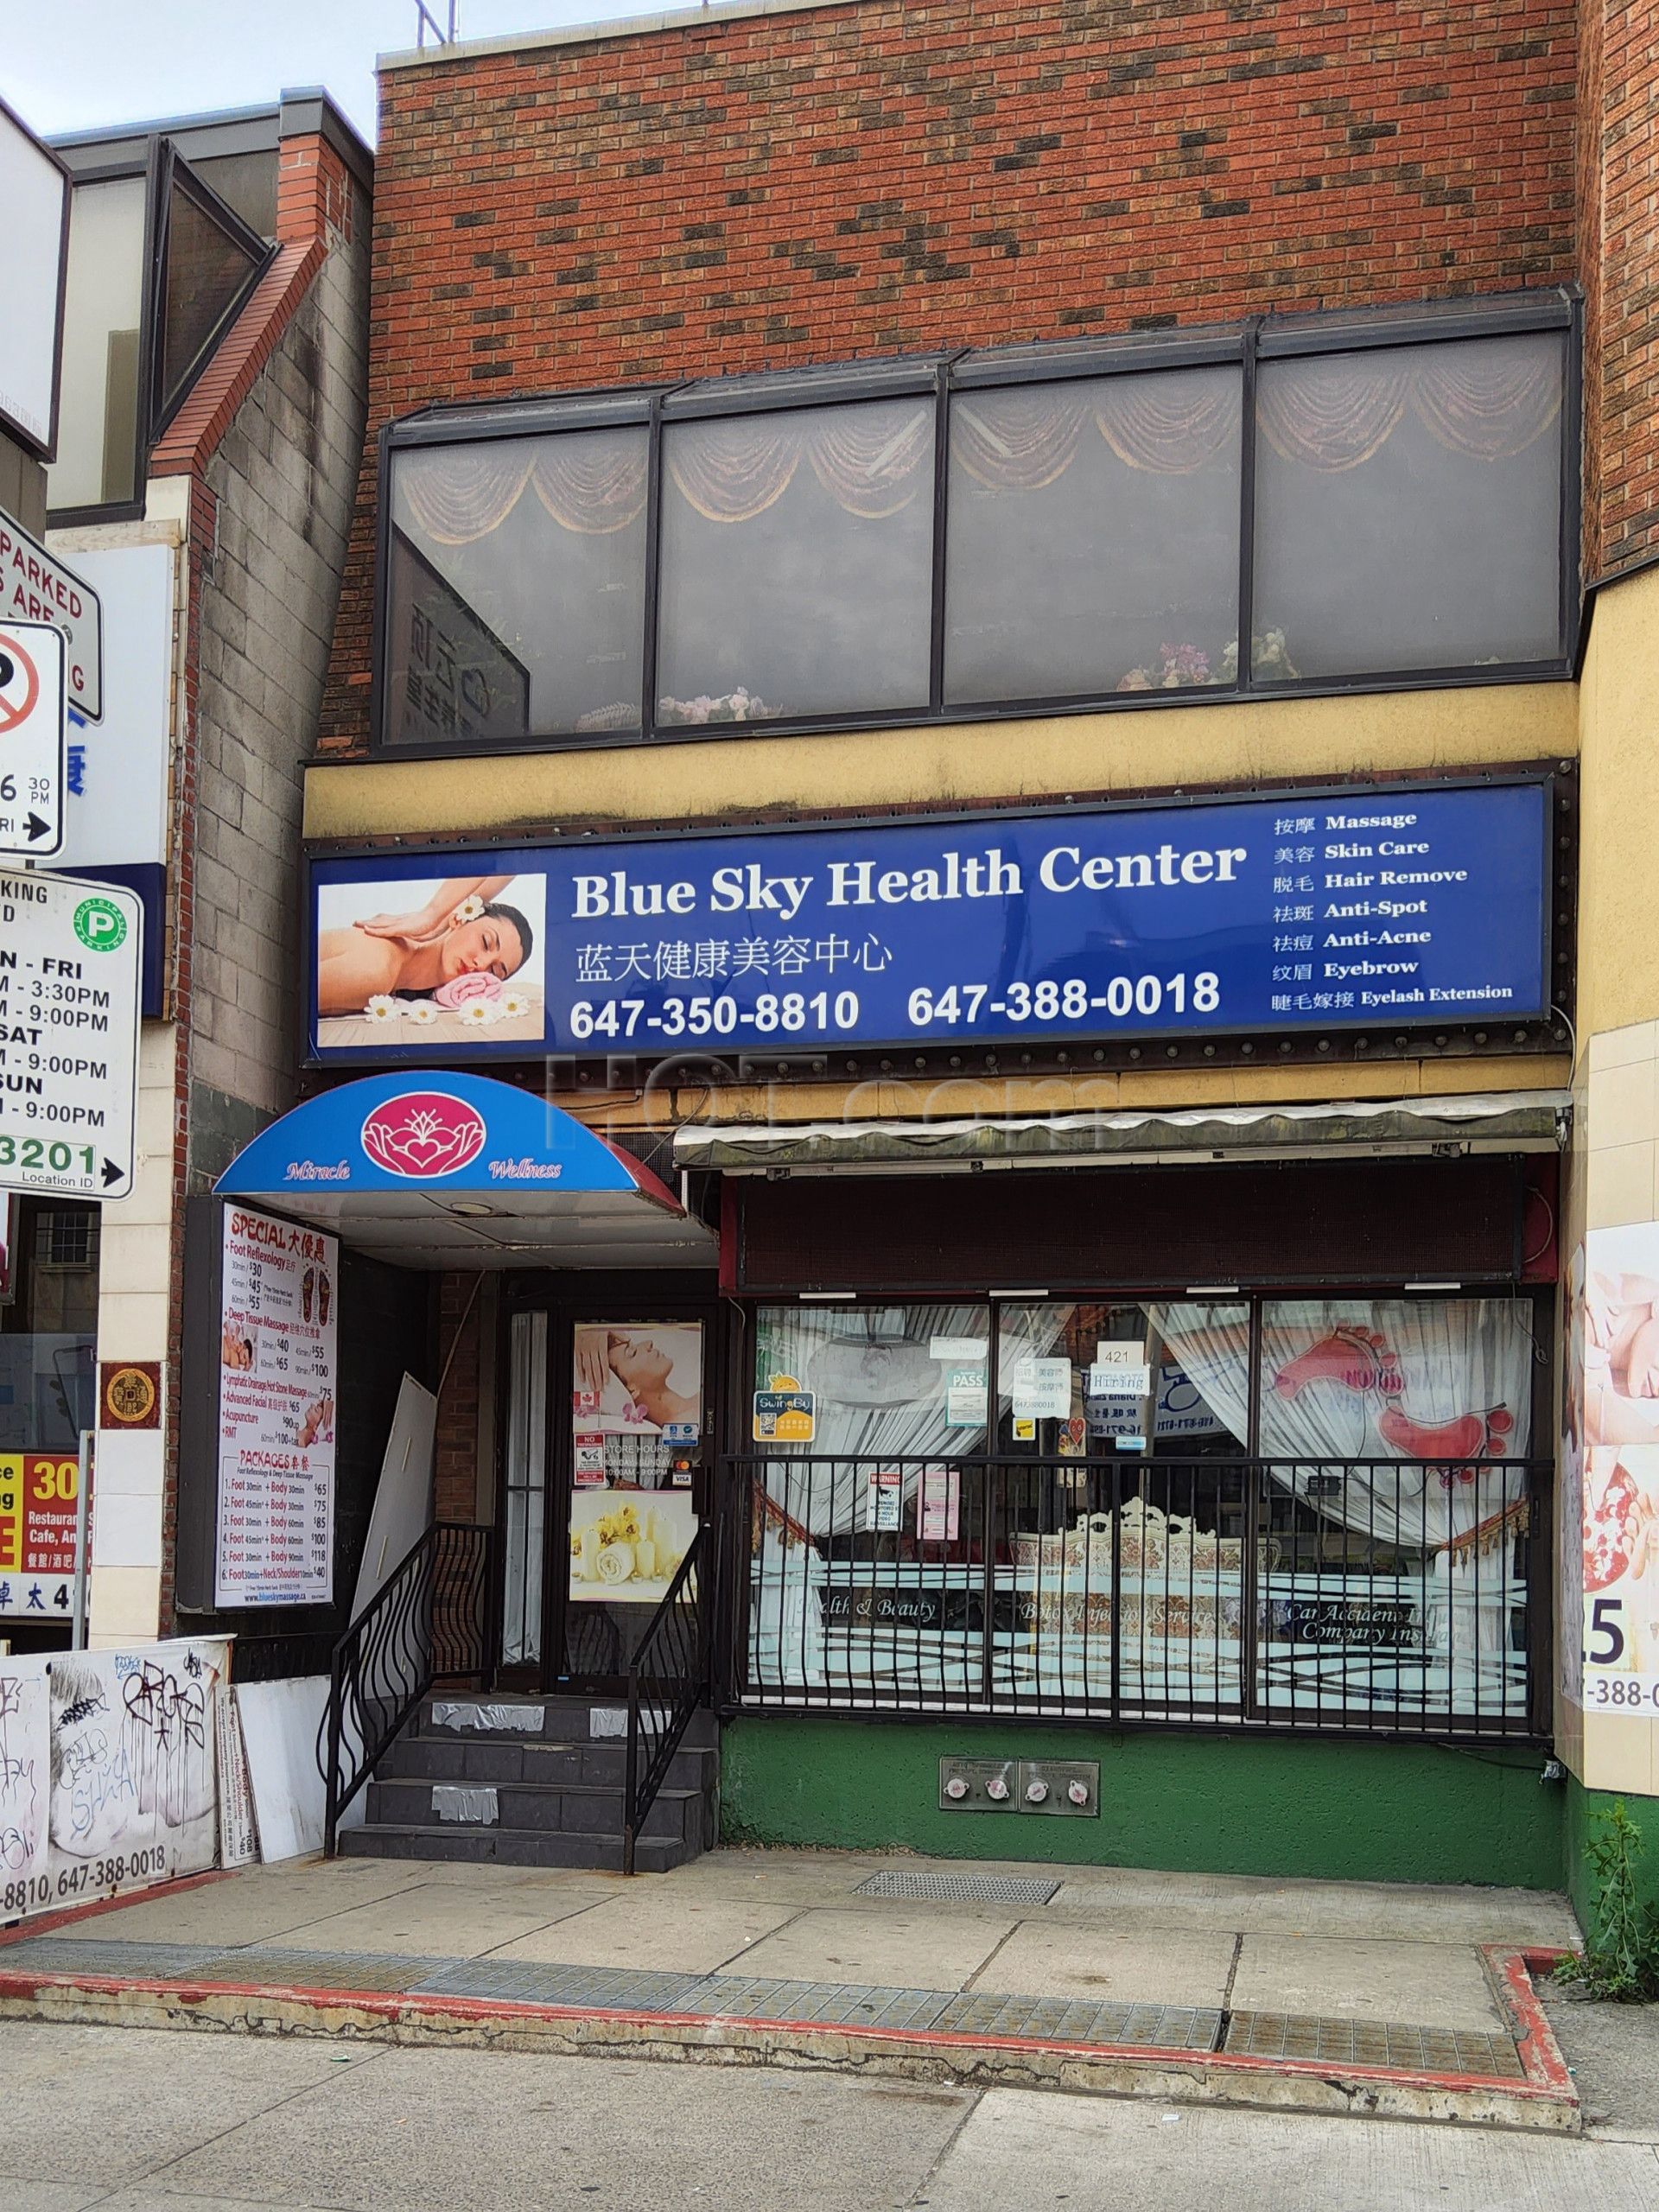 Toronto, Ontario Blue Sky Health Center